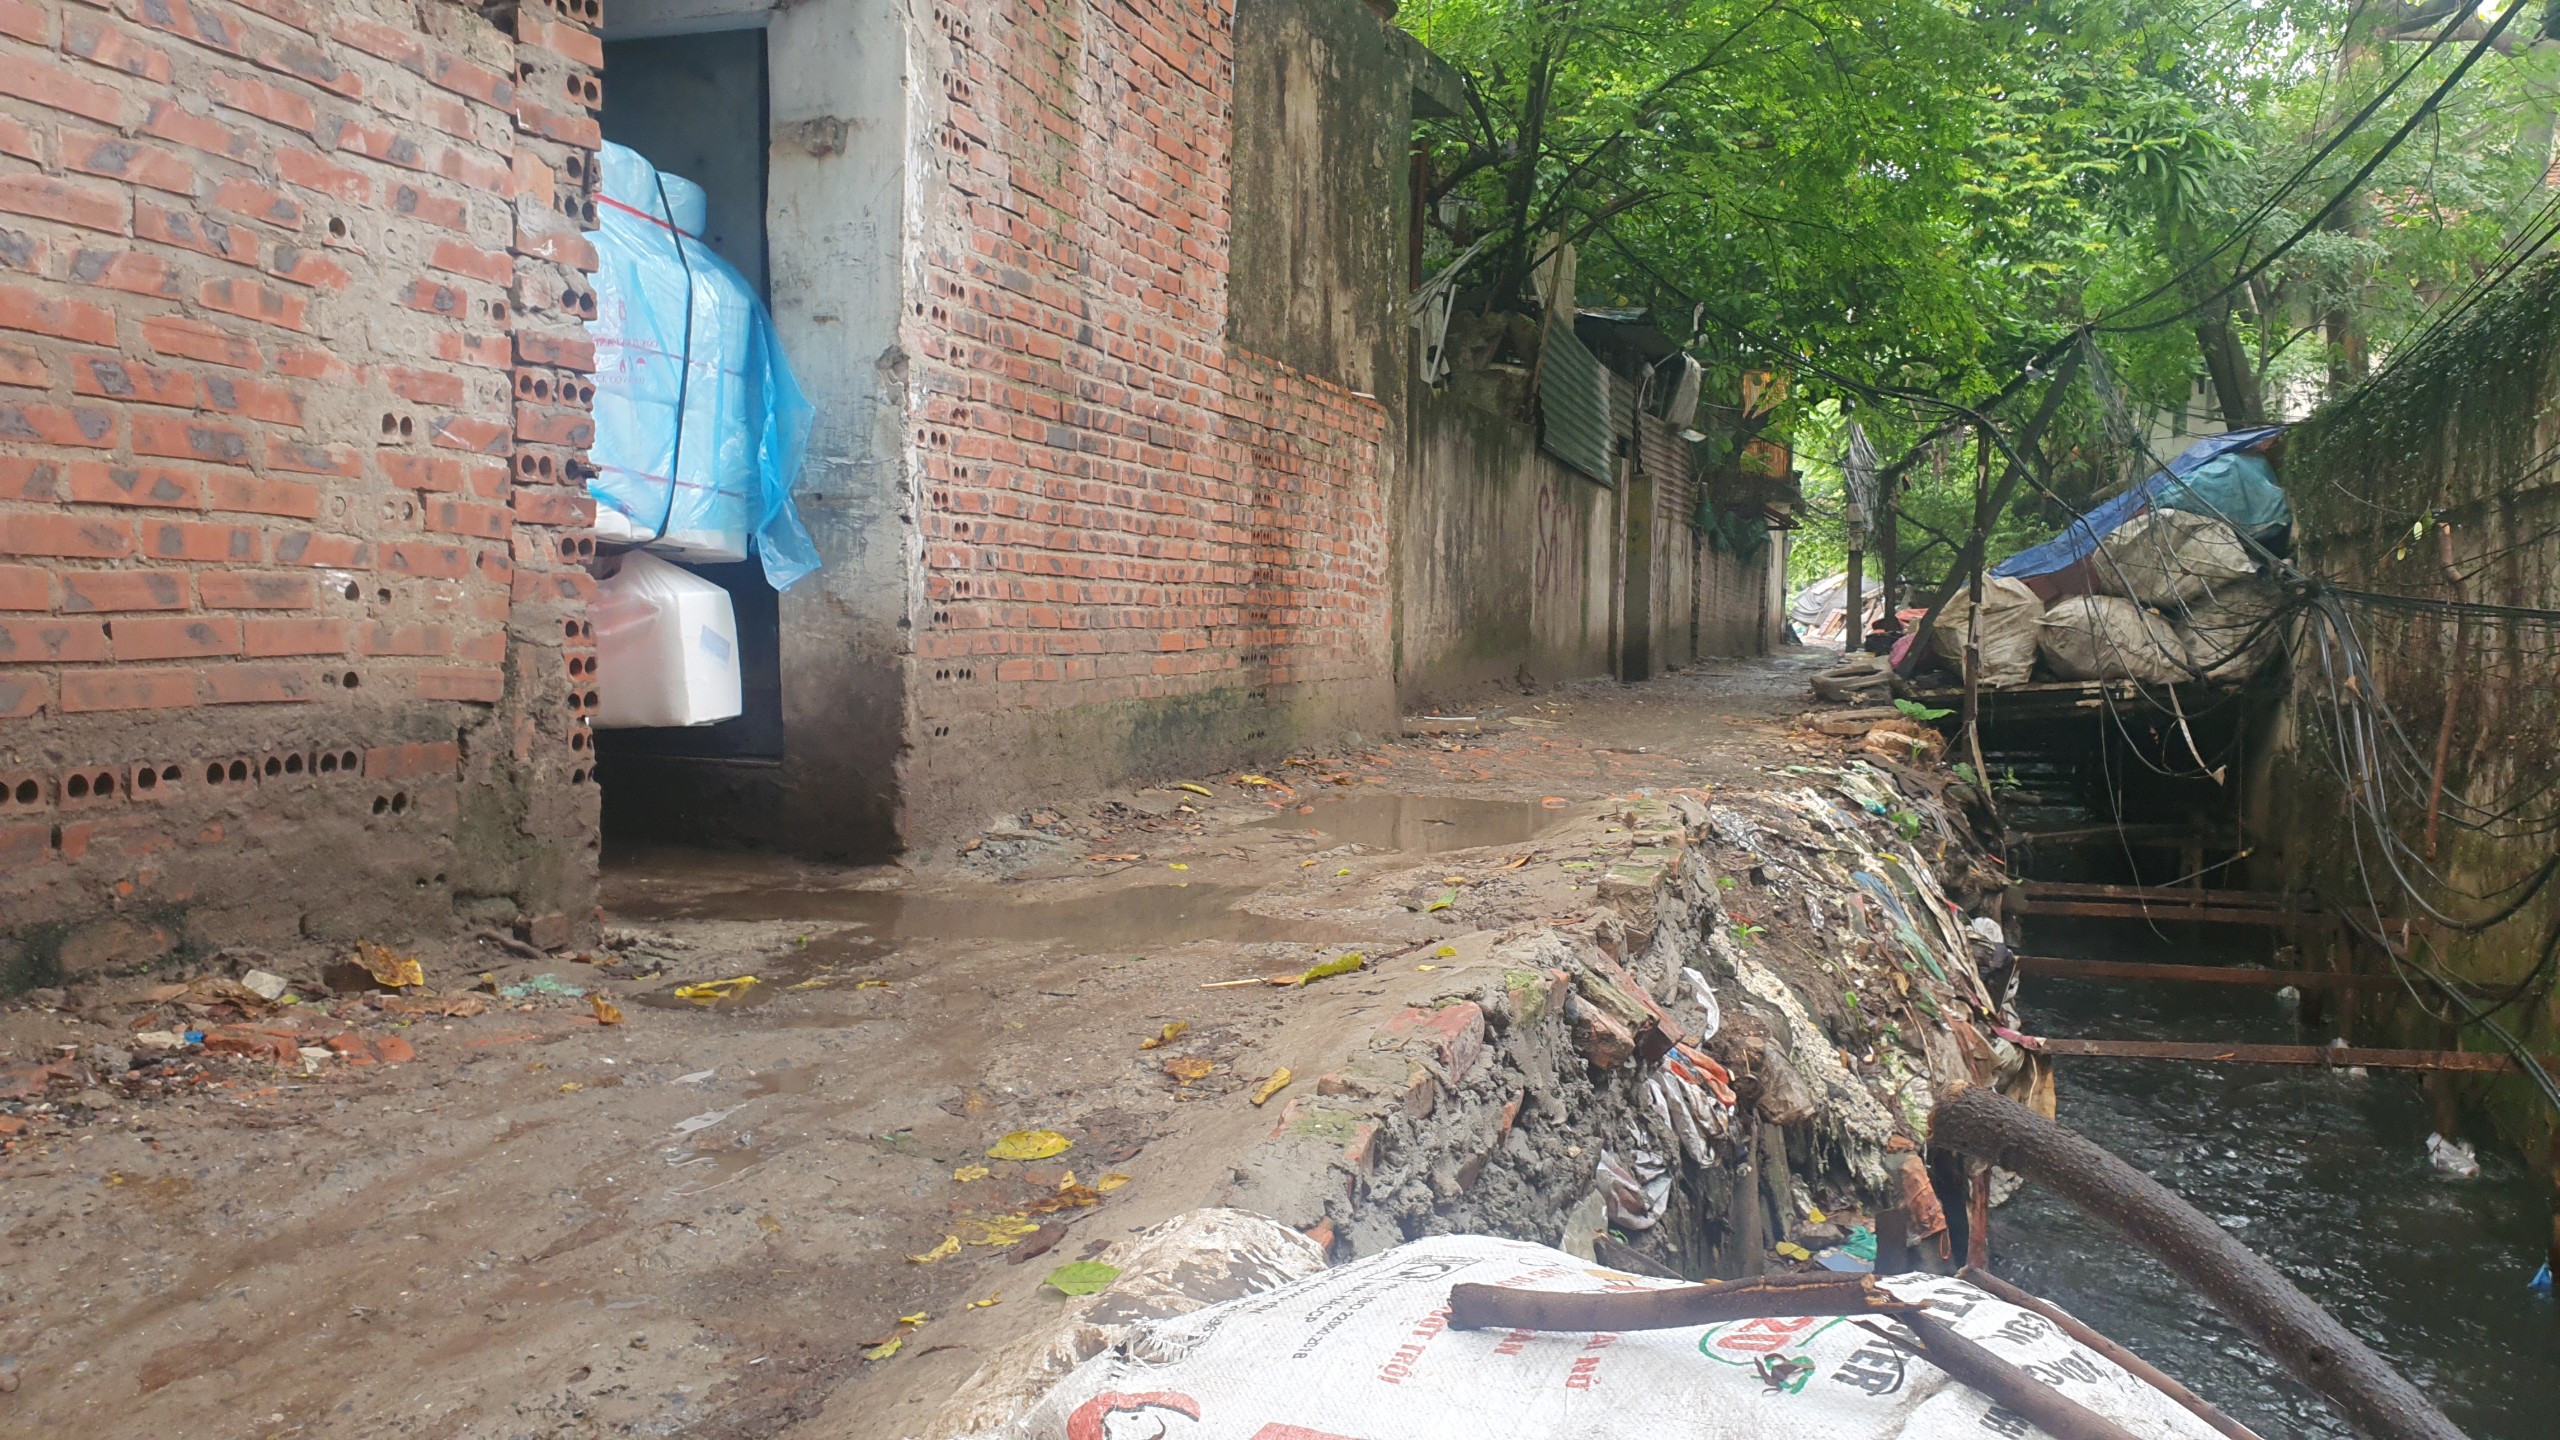 Kênh mương Kẻ Khế ở Hà Nội tràn ngập rác, nguồn nước đen kịt tiềm ẩn nguy cơ dịch bệnh - Ảnh 10.